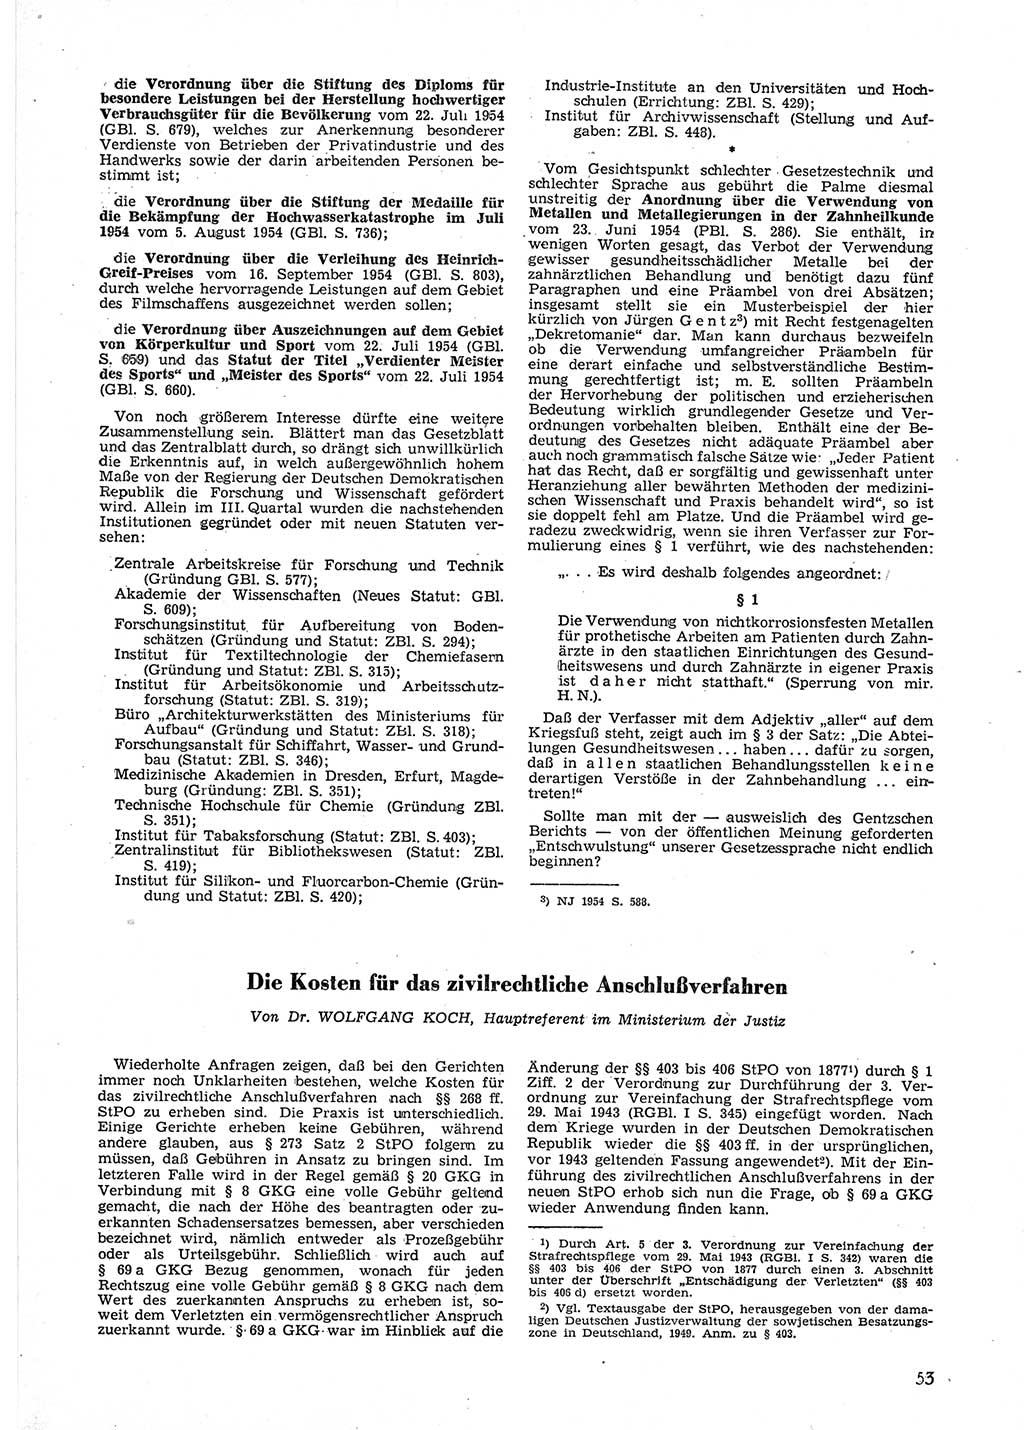 Neue Justiz (NJ), Zeitschrift für Recht und Rechtswissenschaft [Deutsche Demokratische Republik (DDR)], 9. Jahrgang 1955, Seite 53 (NJ DDR 1955, S. 53)